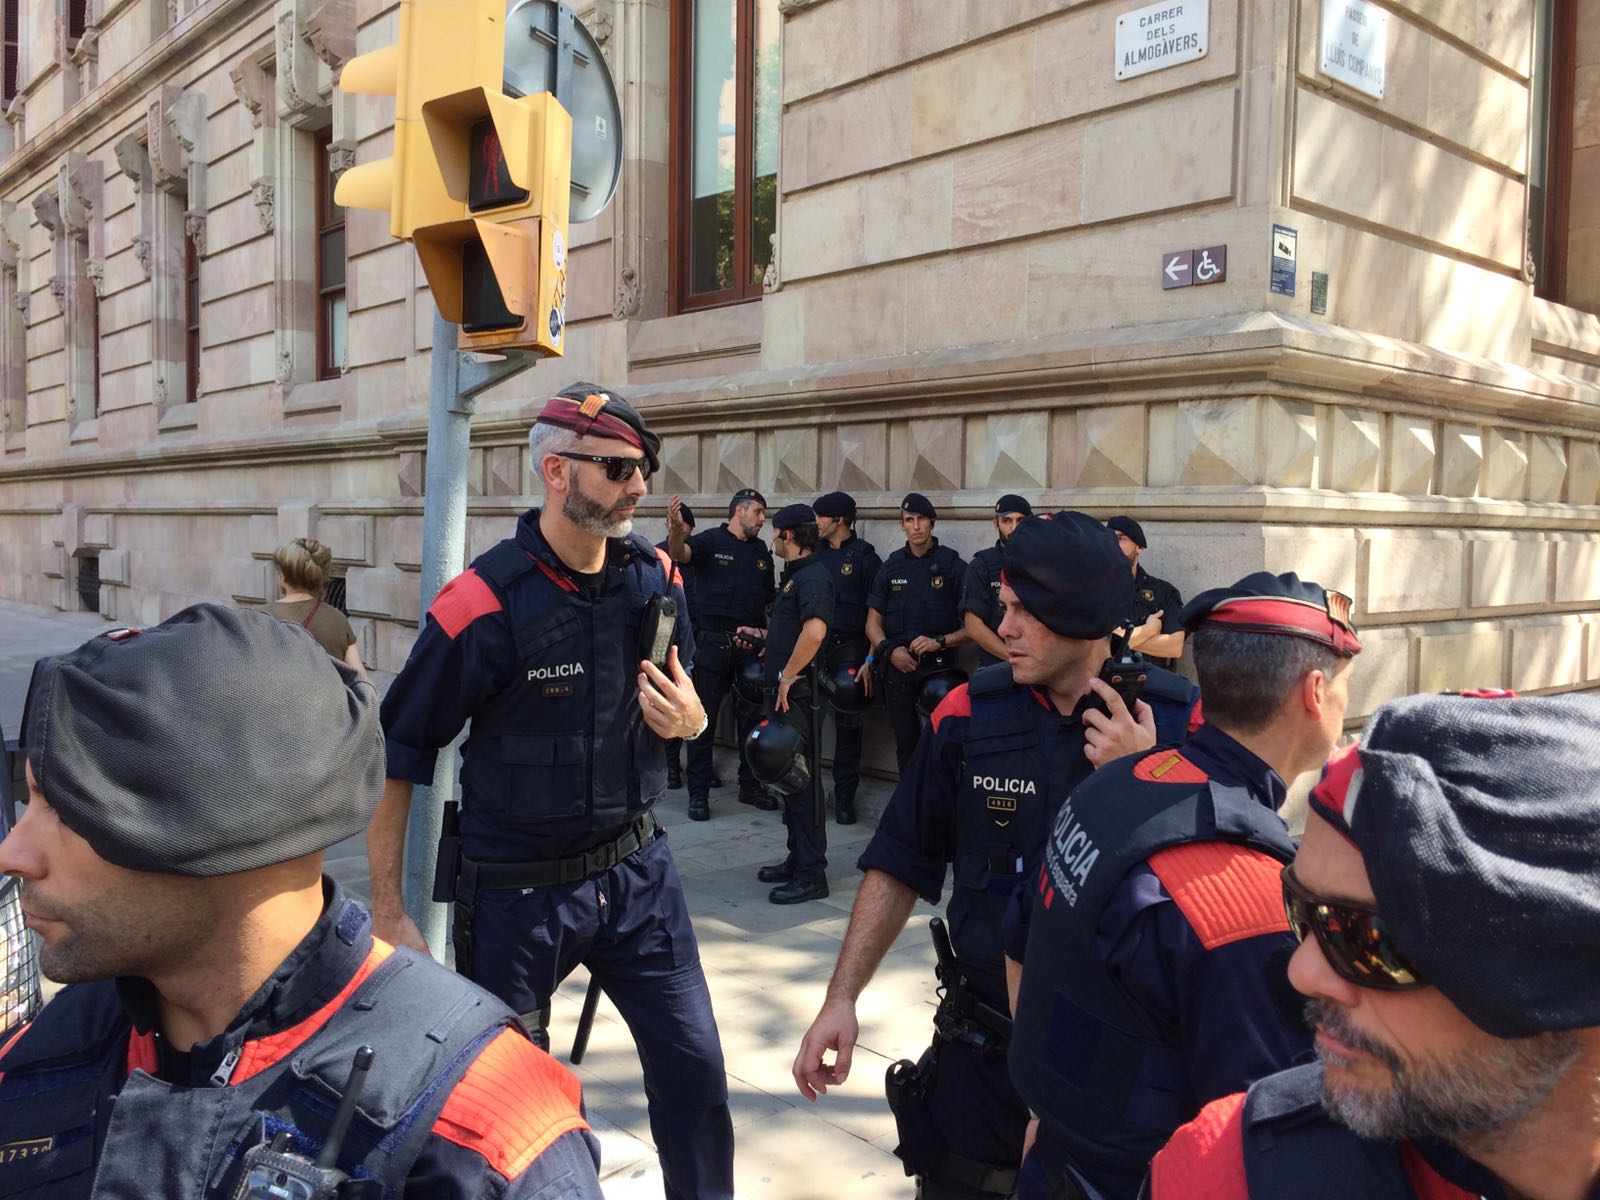 Els Mossos reforcen les unitats d'ordre públic davant la presència de la policia espanyola